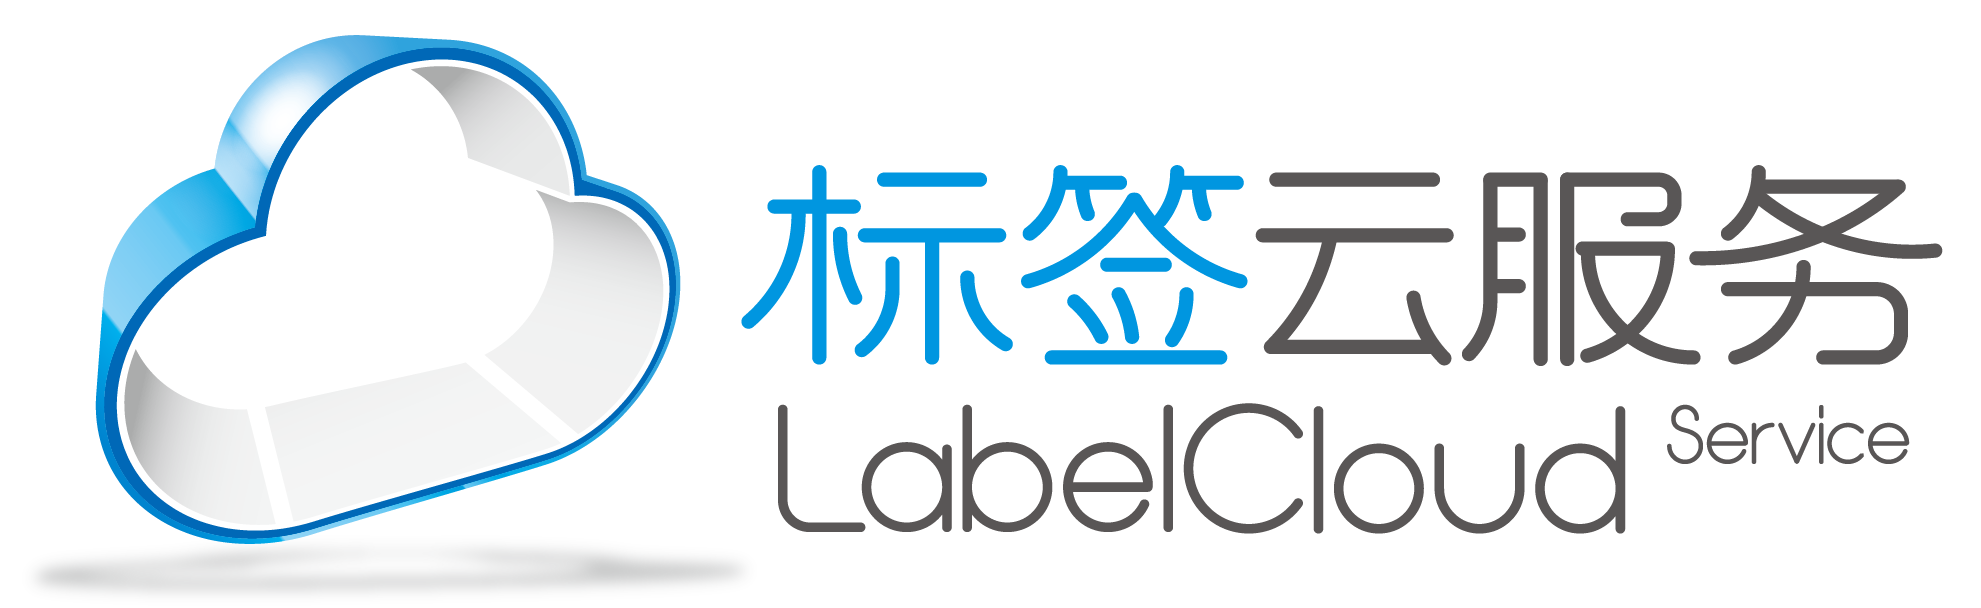 LabelCloud-02.png